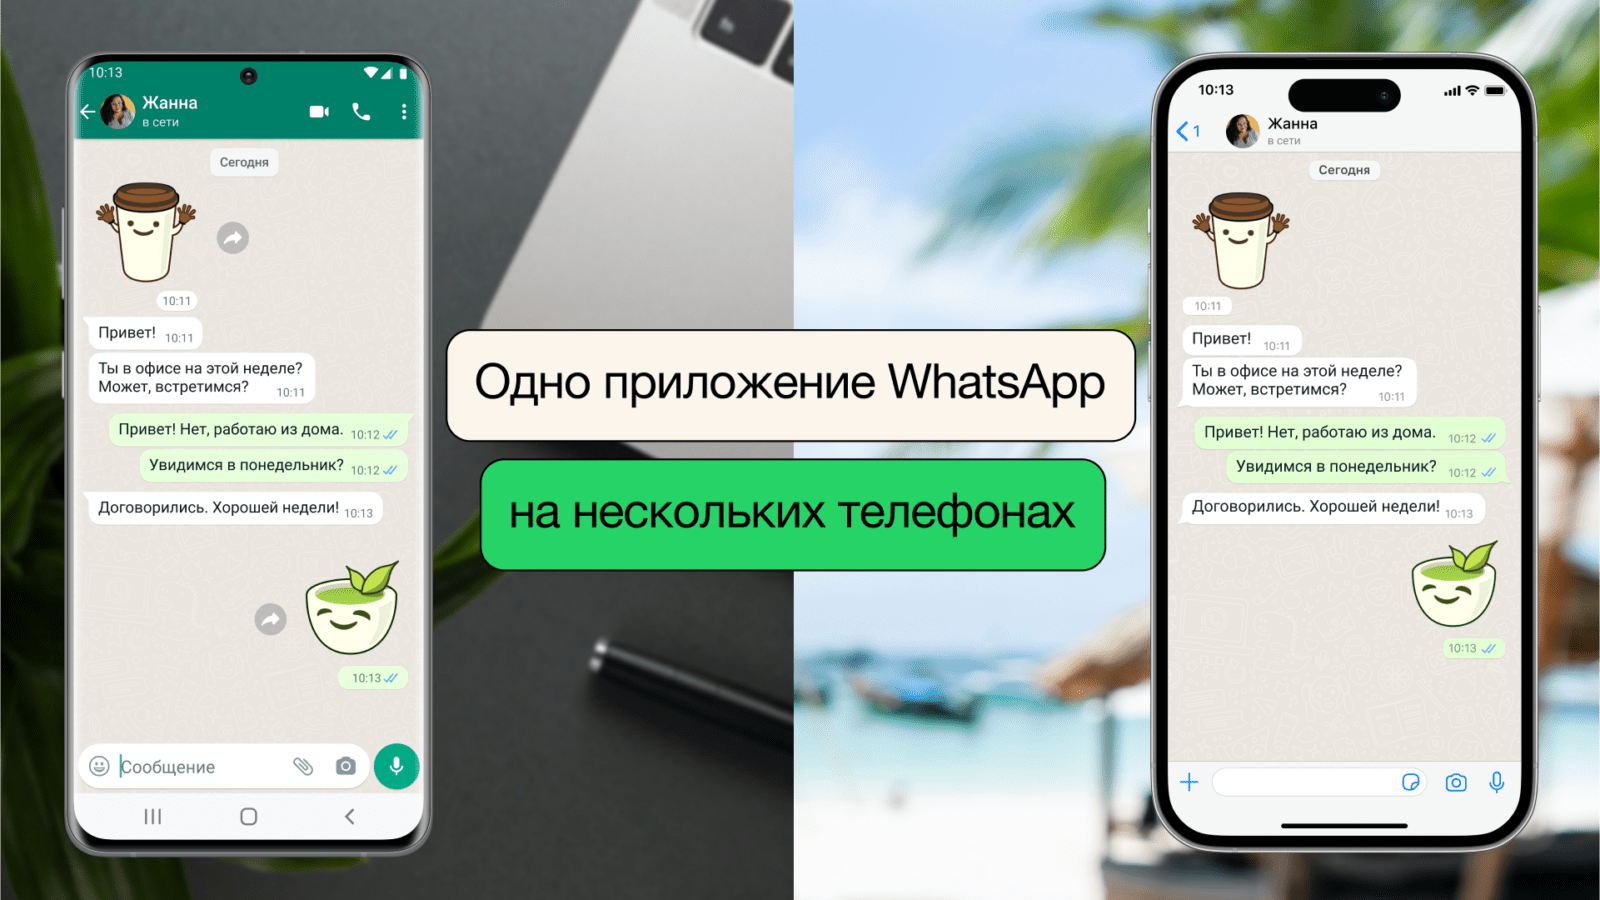 WhatsApp вводит новую функцию: использование одного аккаунта на нескольких телефонах